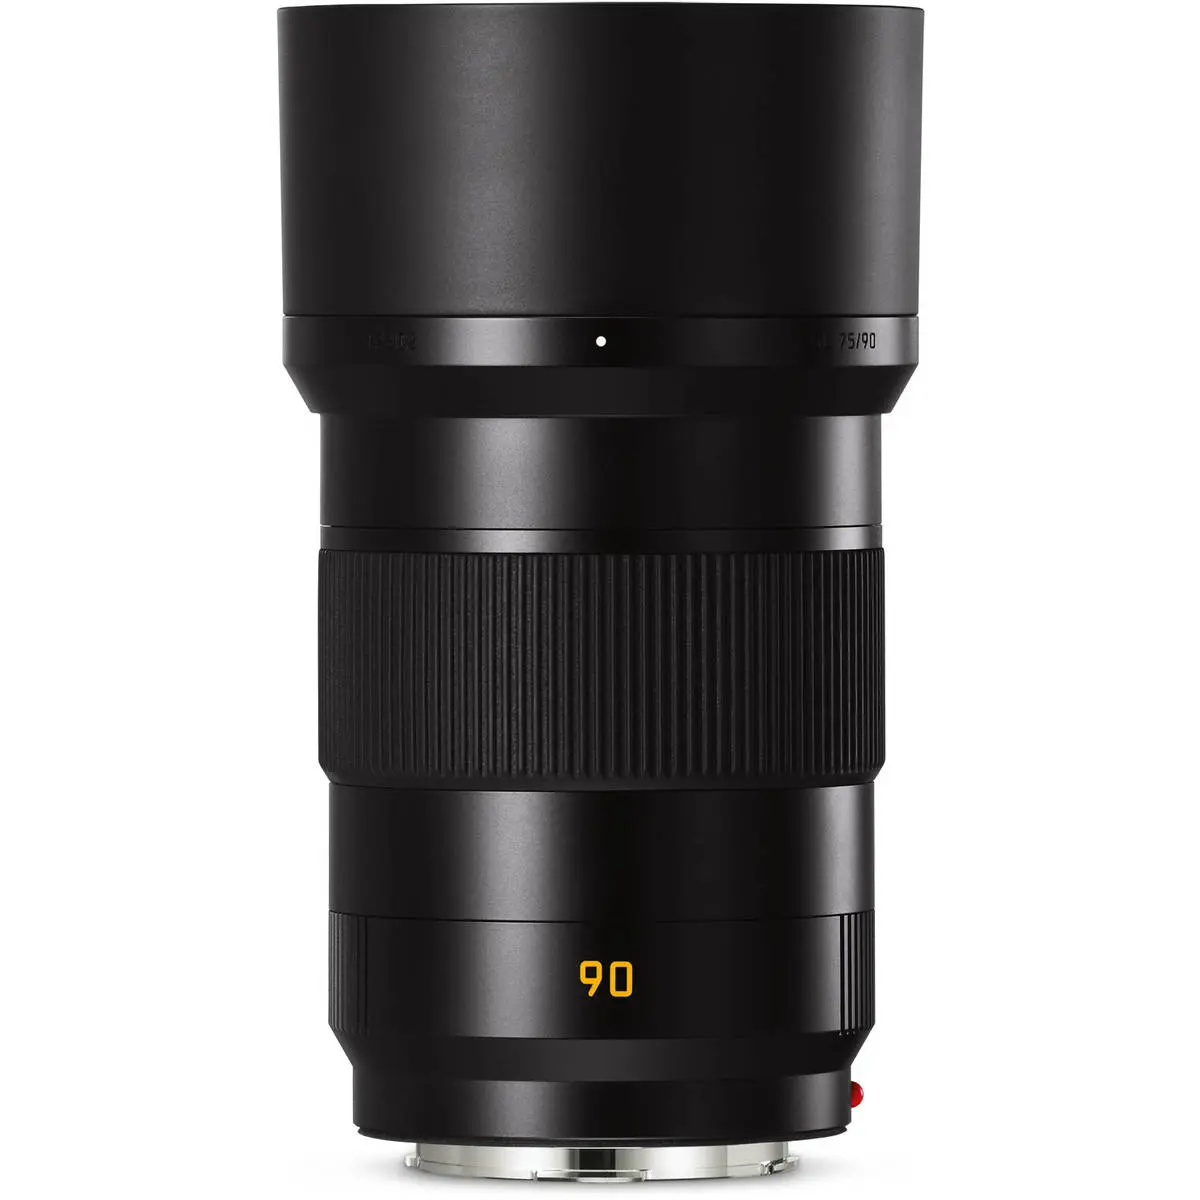 3. Leica APO-Summicron-SL 90mm f/2 ASPH (11179) Lens